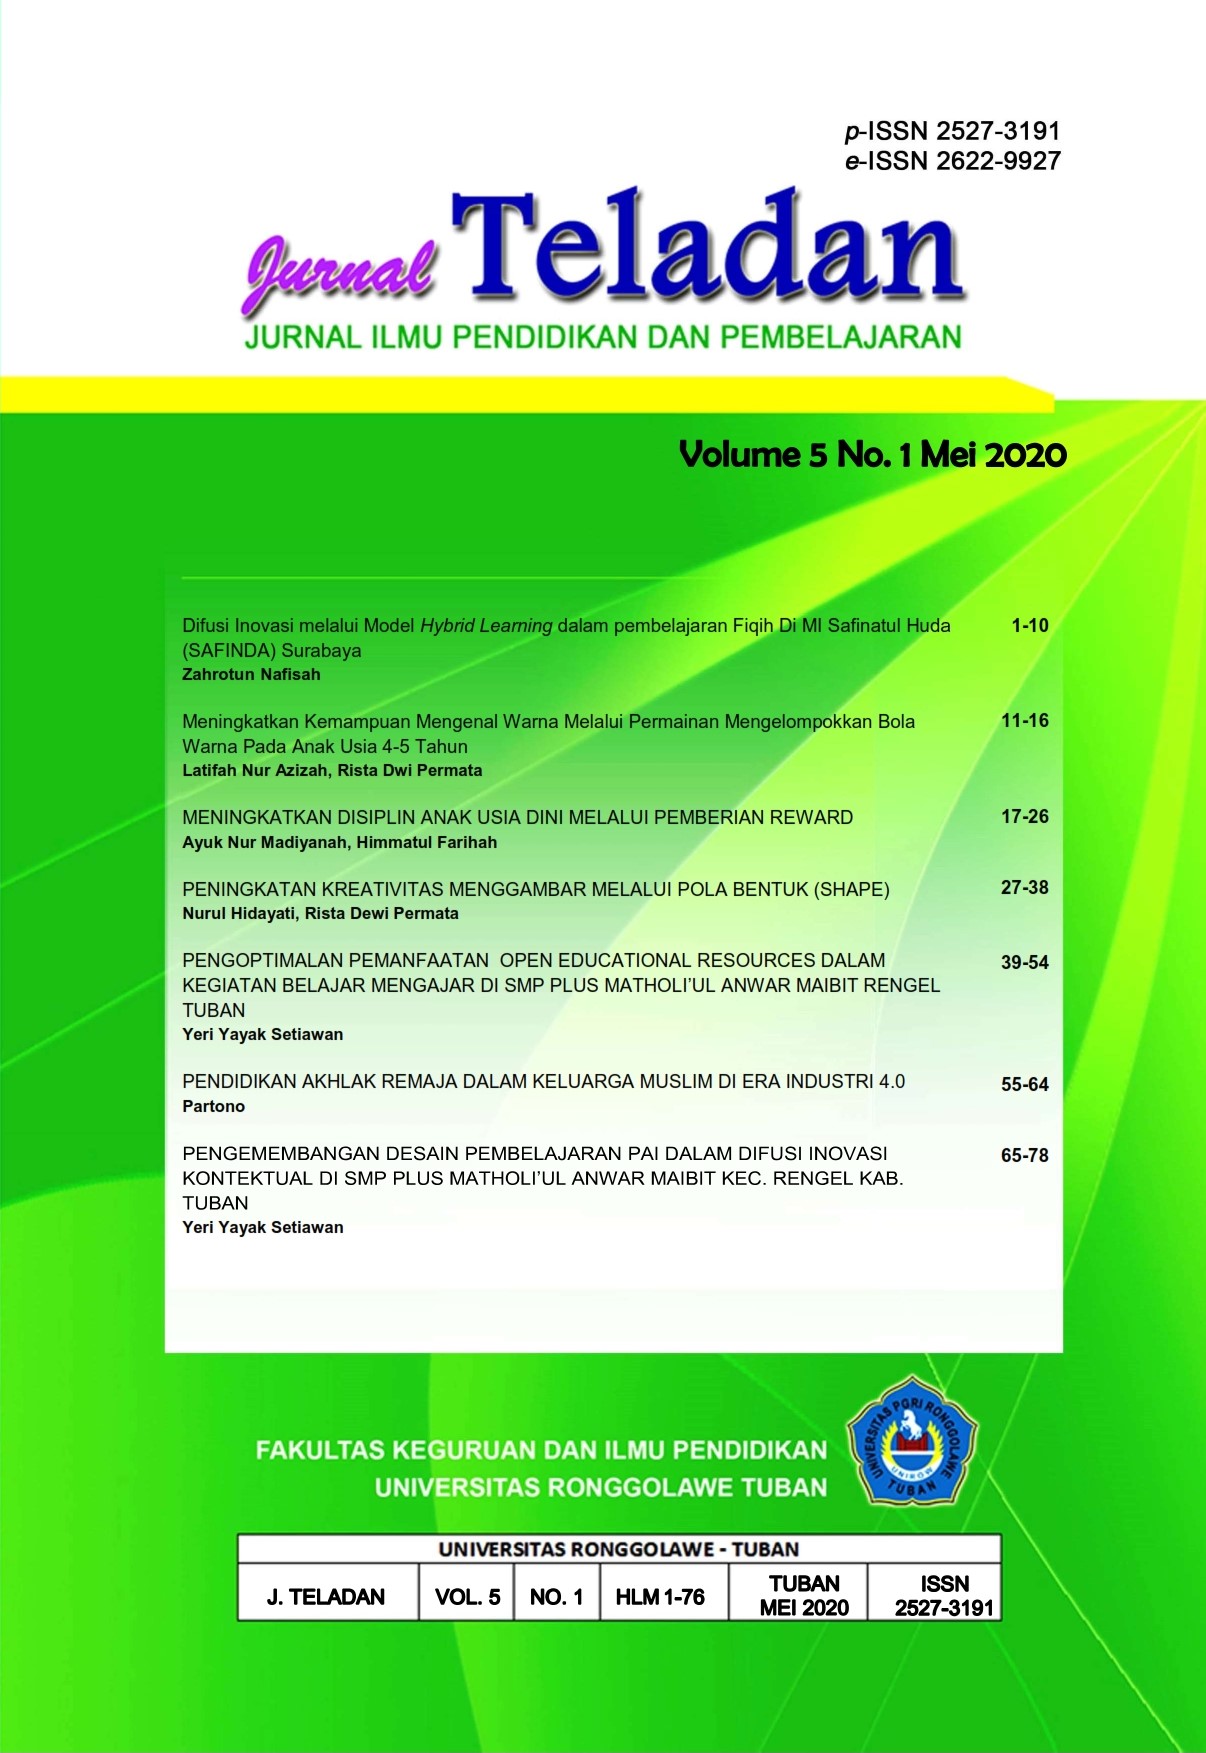 					View Vol. 5 No. 1 (2020): Jurnal Teladan Vol.5. No.1 Mei 2020
				